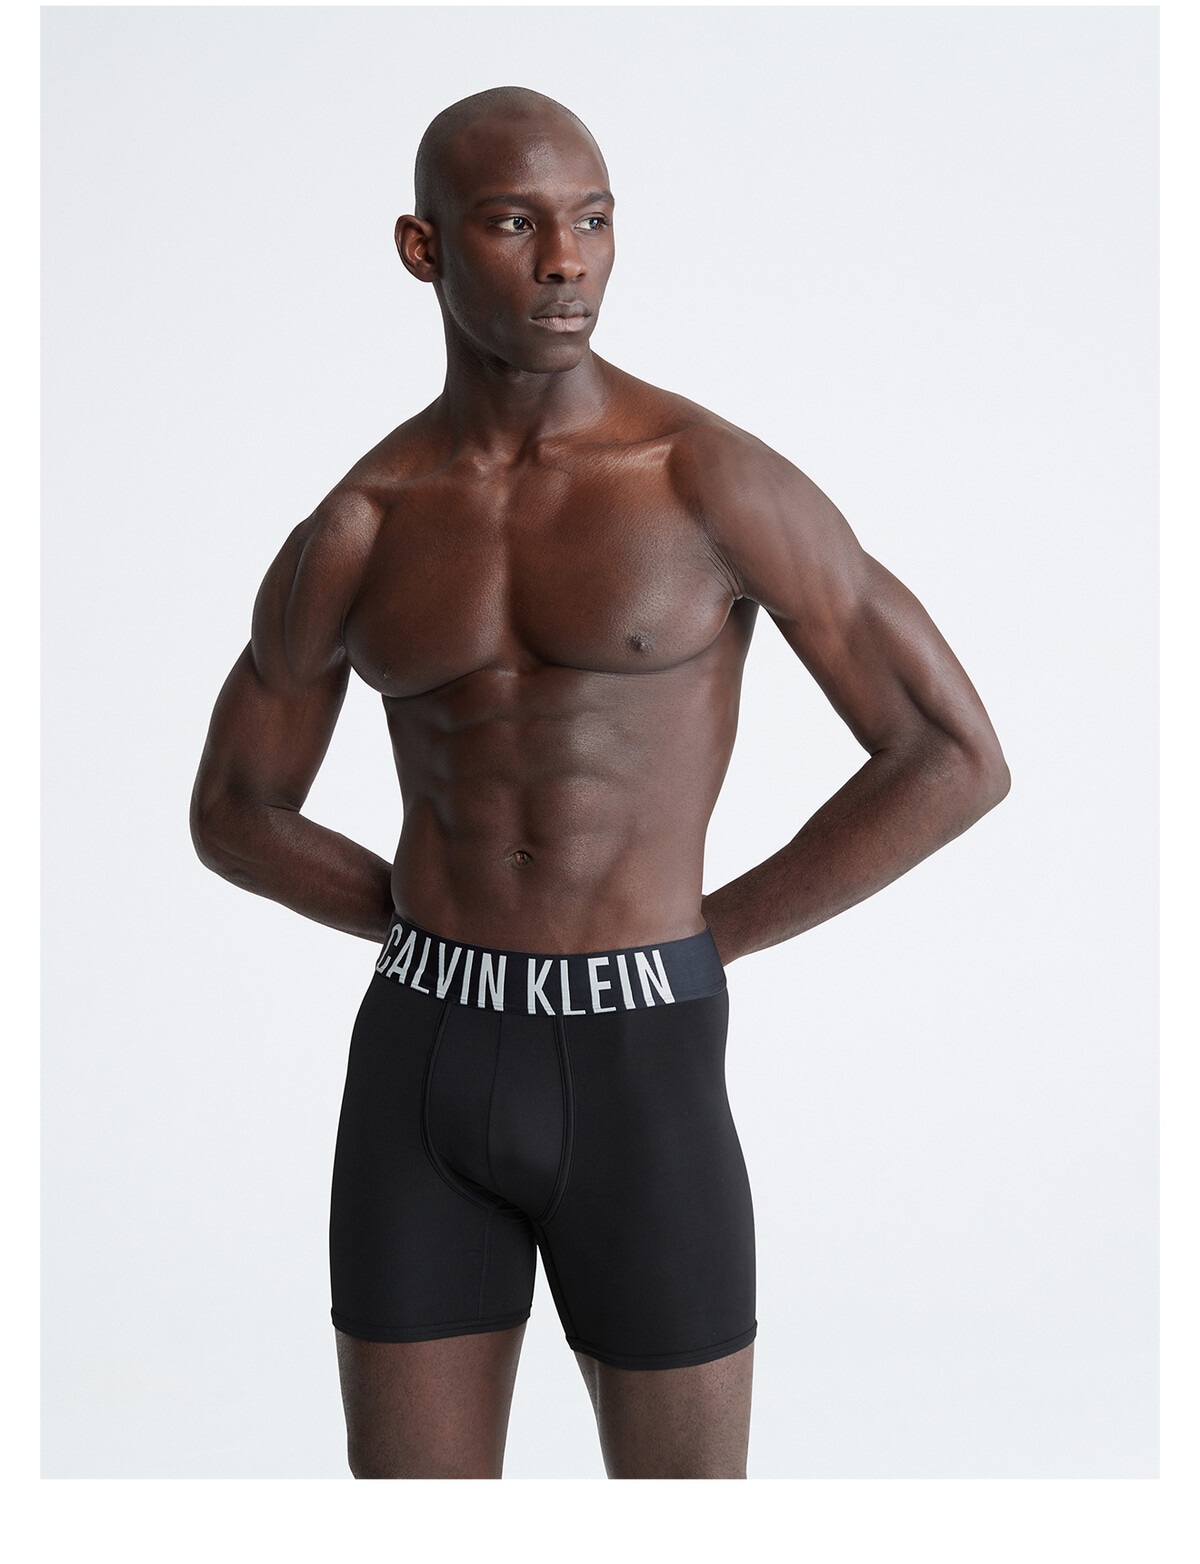 Calvin Klein Intense Power Microfibre Boxer Brief, 3-Pack, Black - Underwear